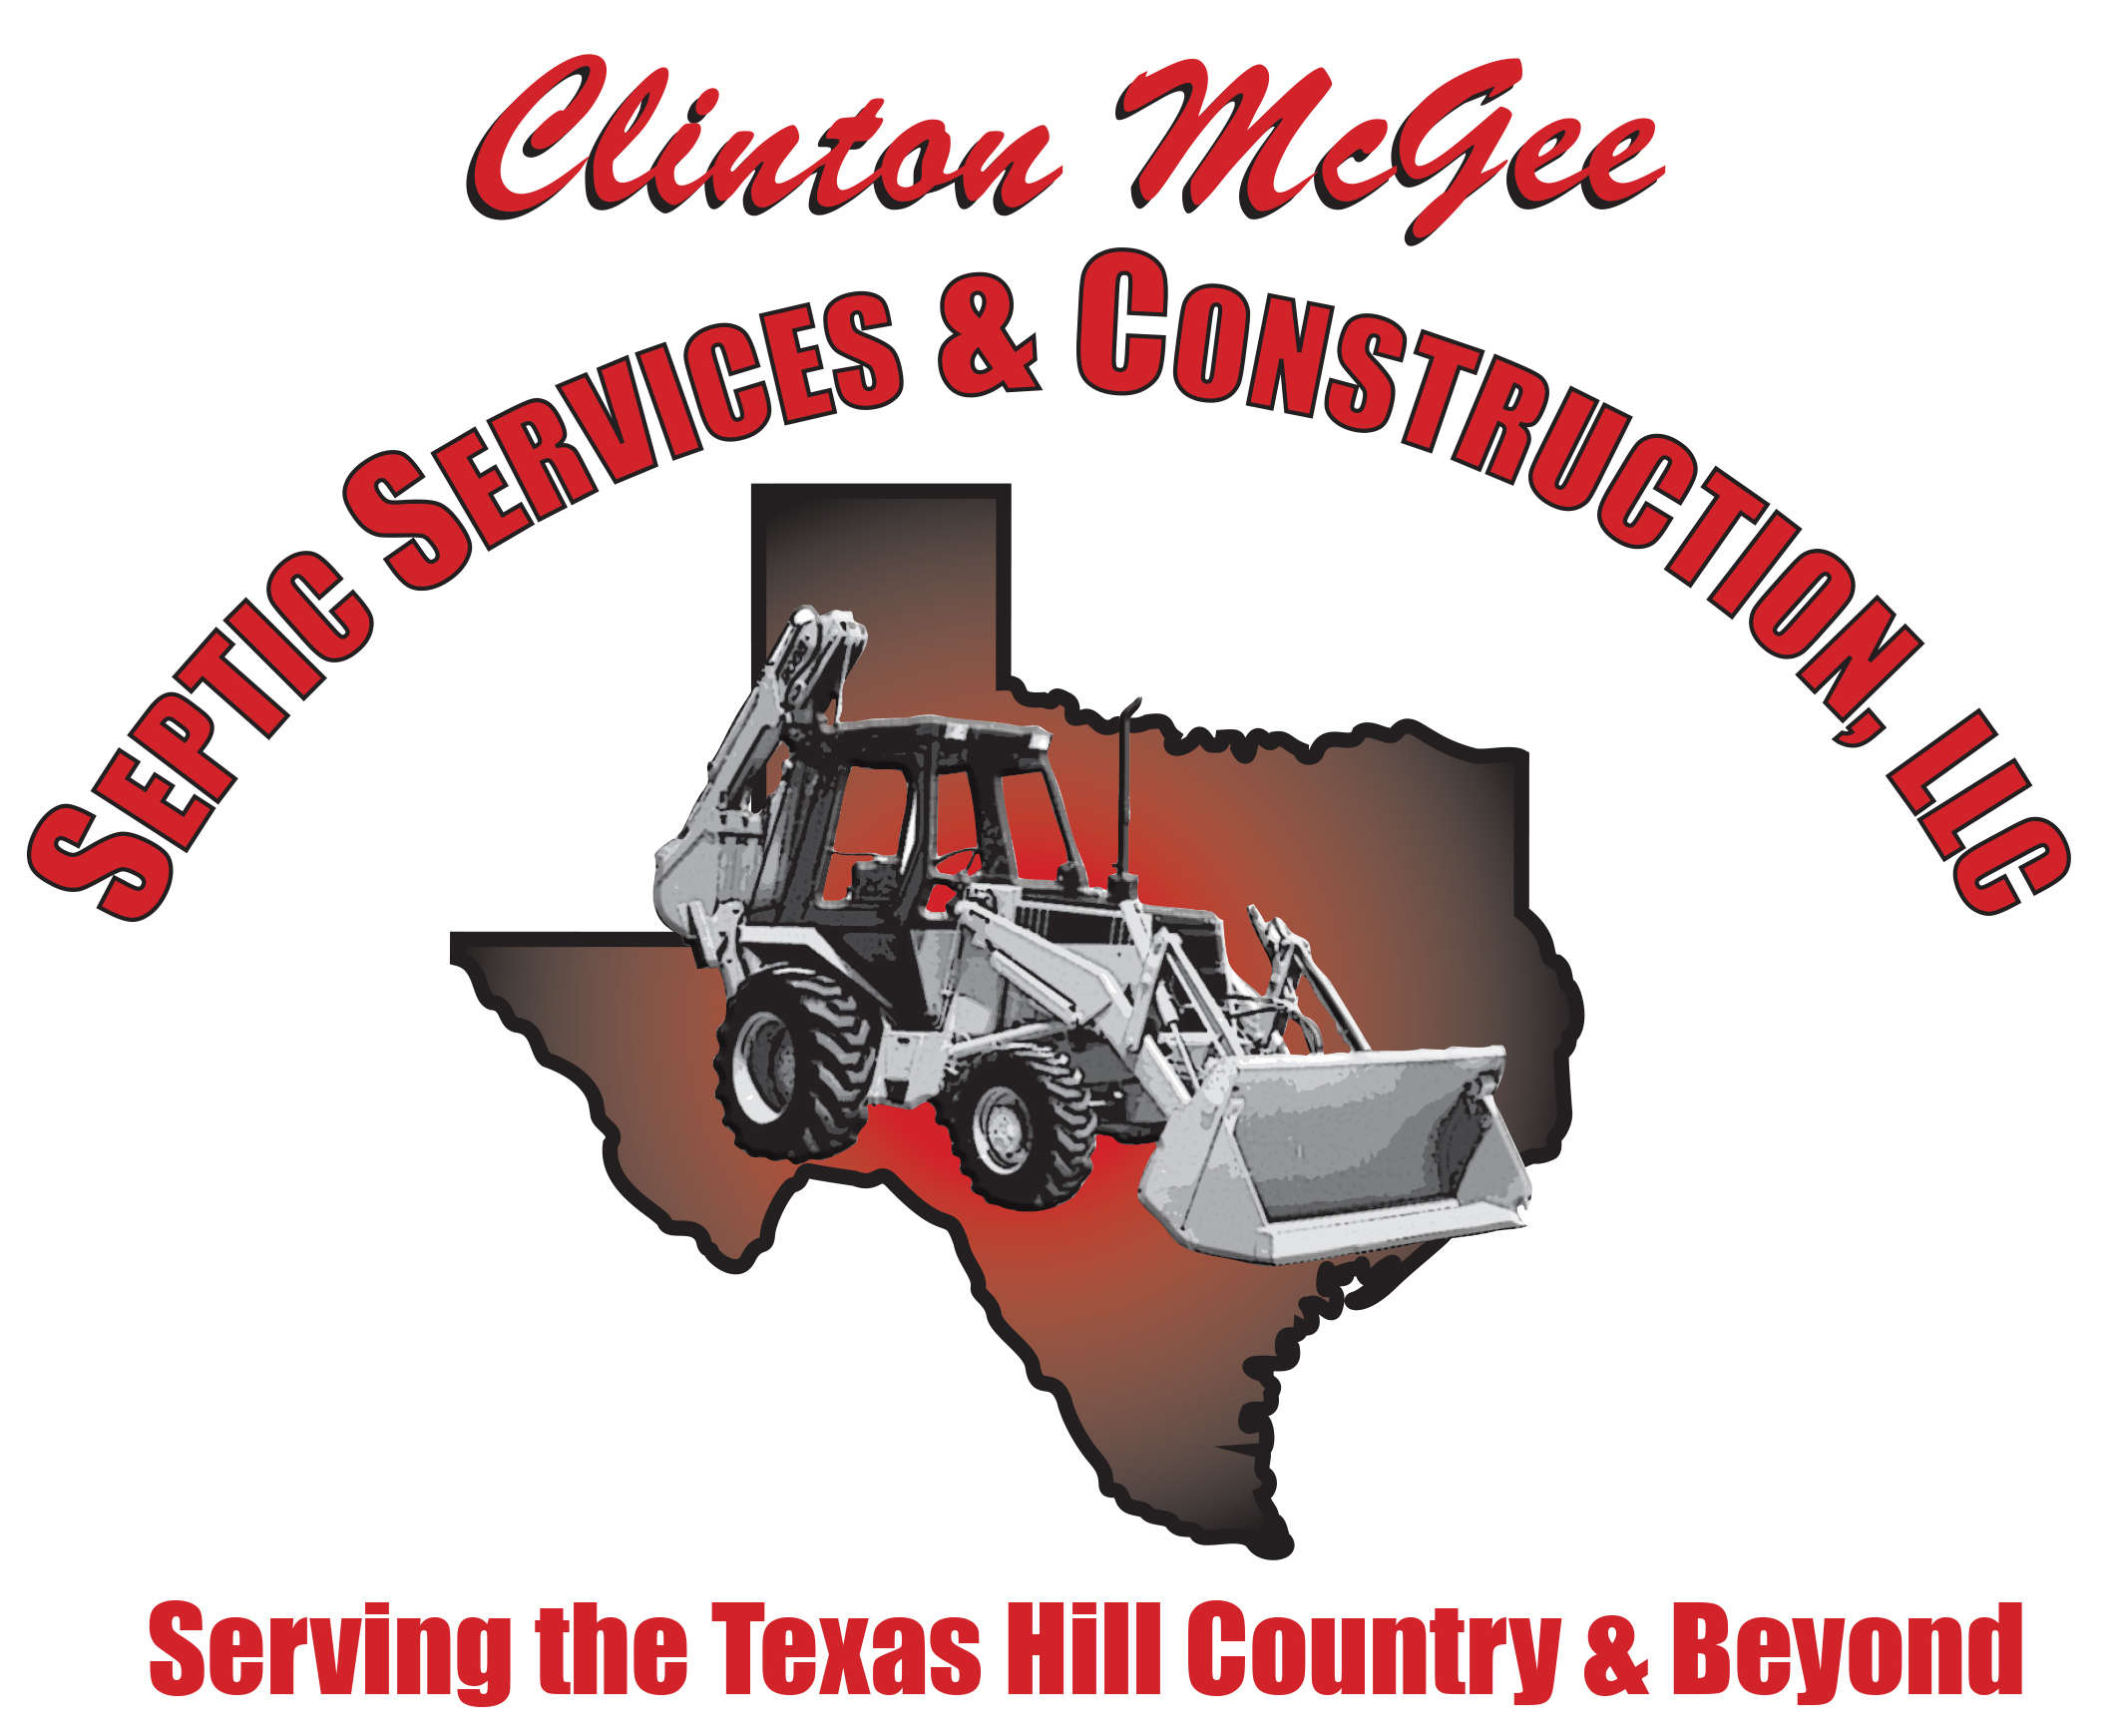 Clinton McGee Septic Services & Construction, LLC Logo